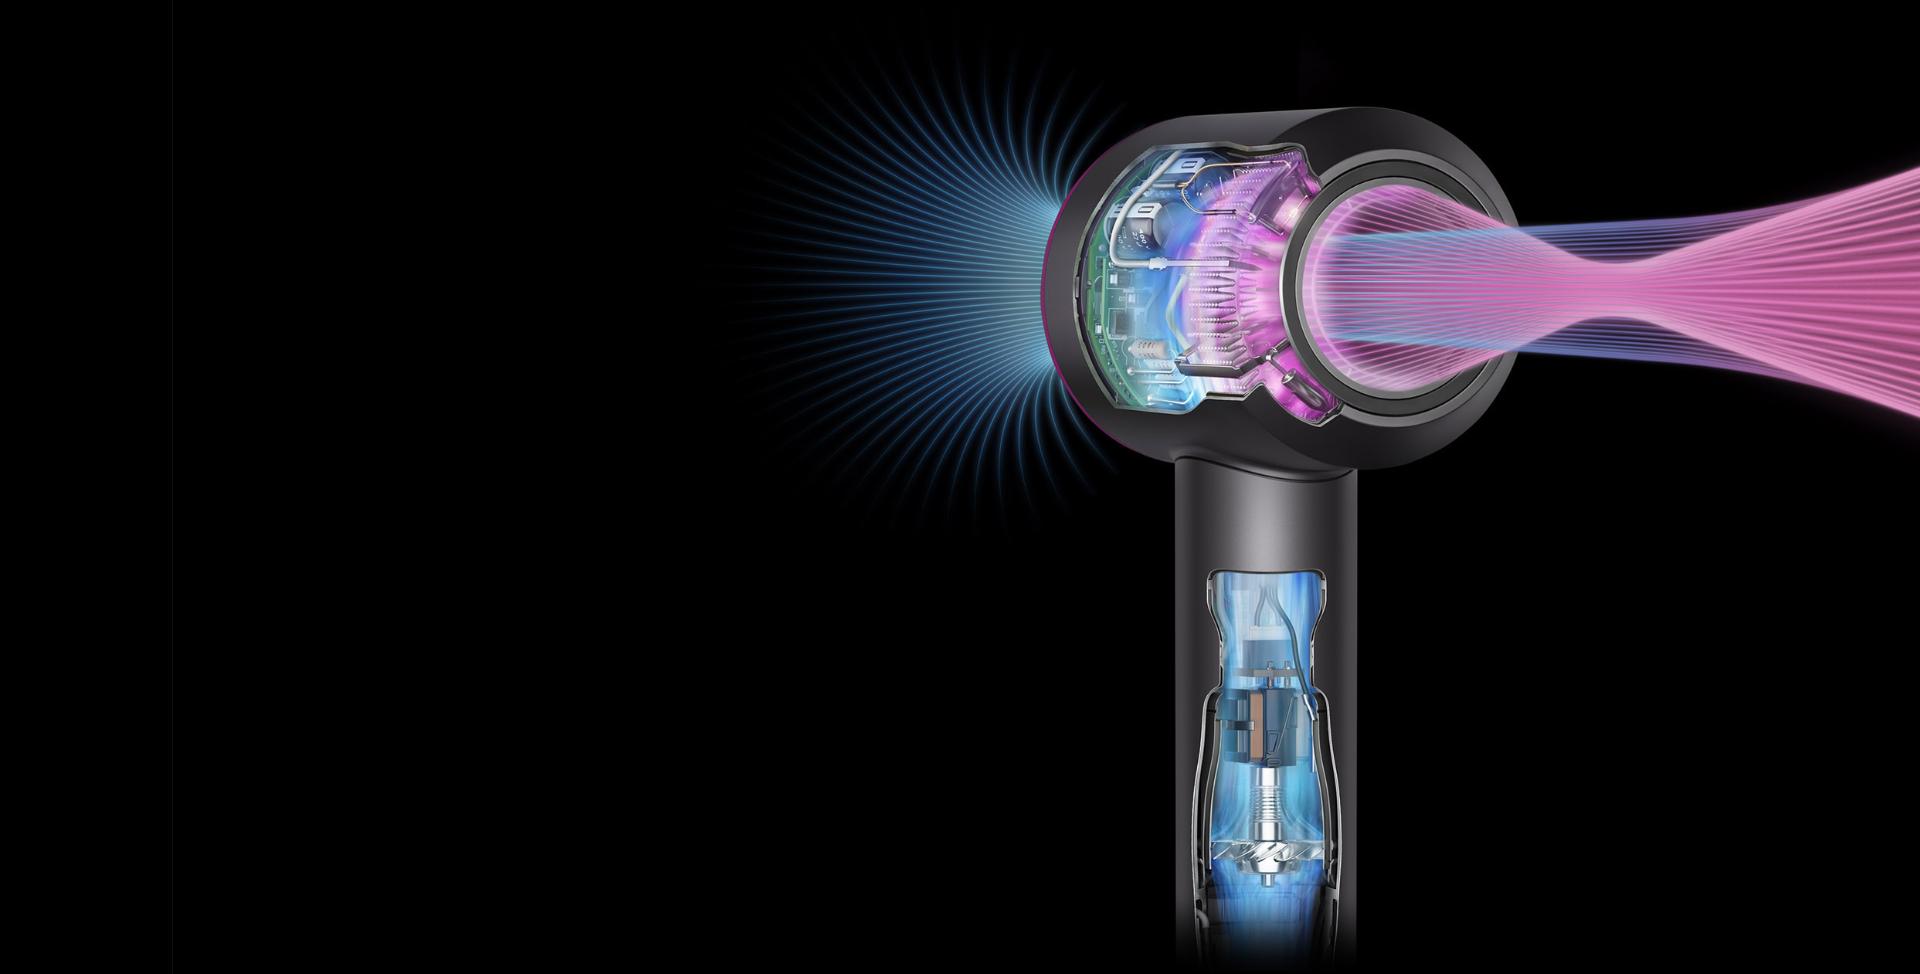 Sơ đồ mặt cắt của máy sấy tóc Supersonic để minh họa luồng gió mạnh mẽ và tính năng kiểm soát nhiệt thông minh.